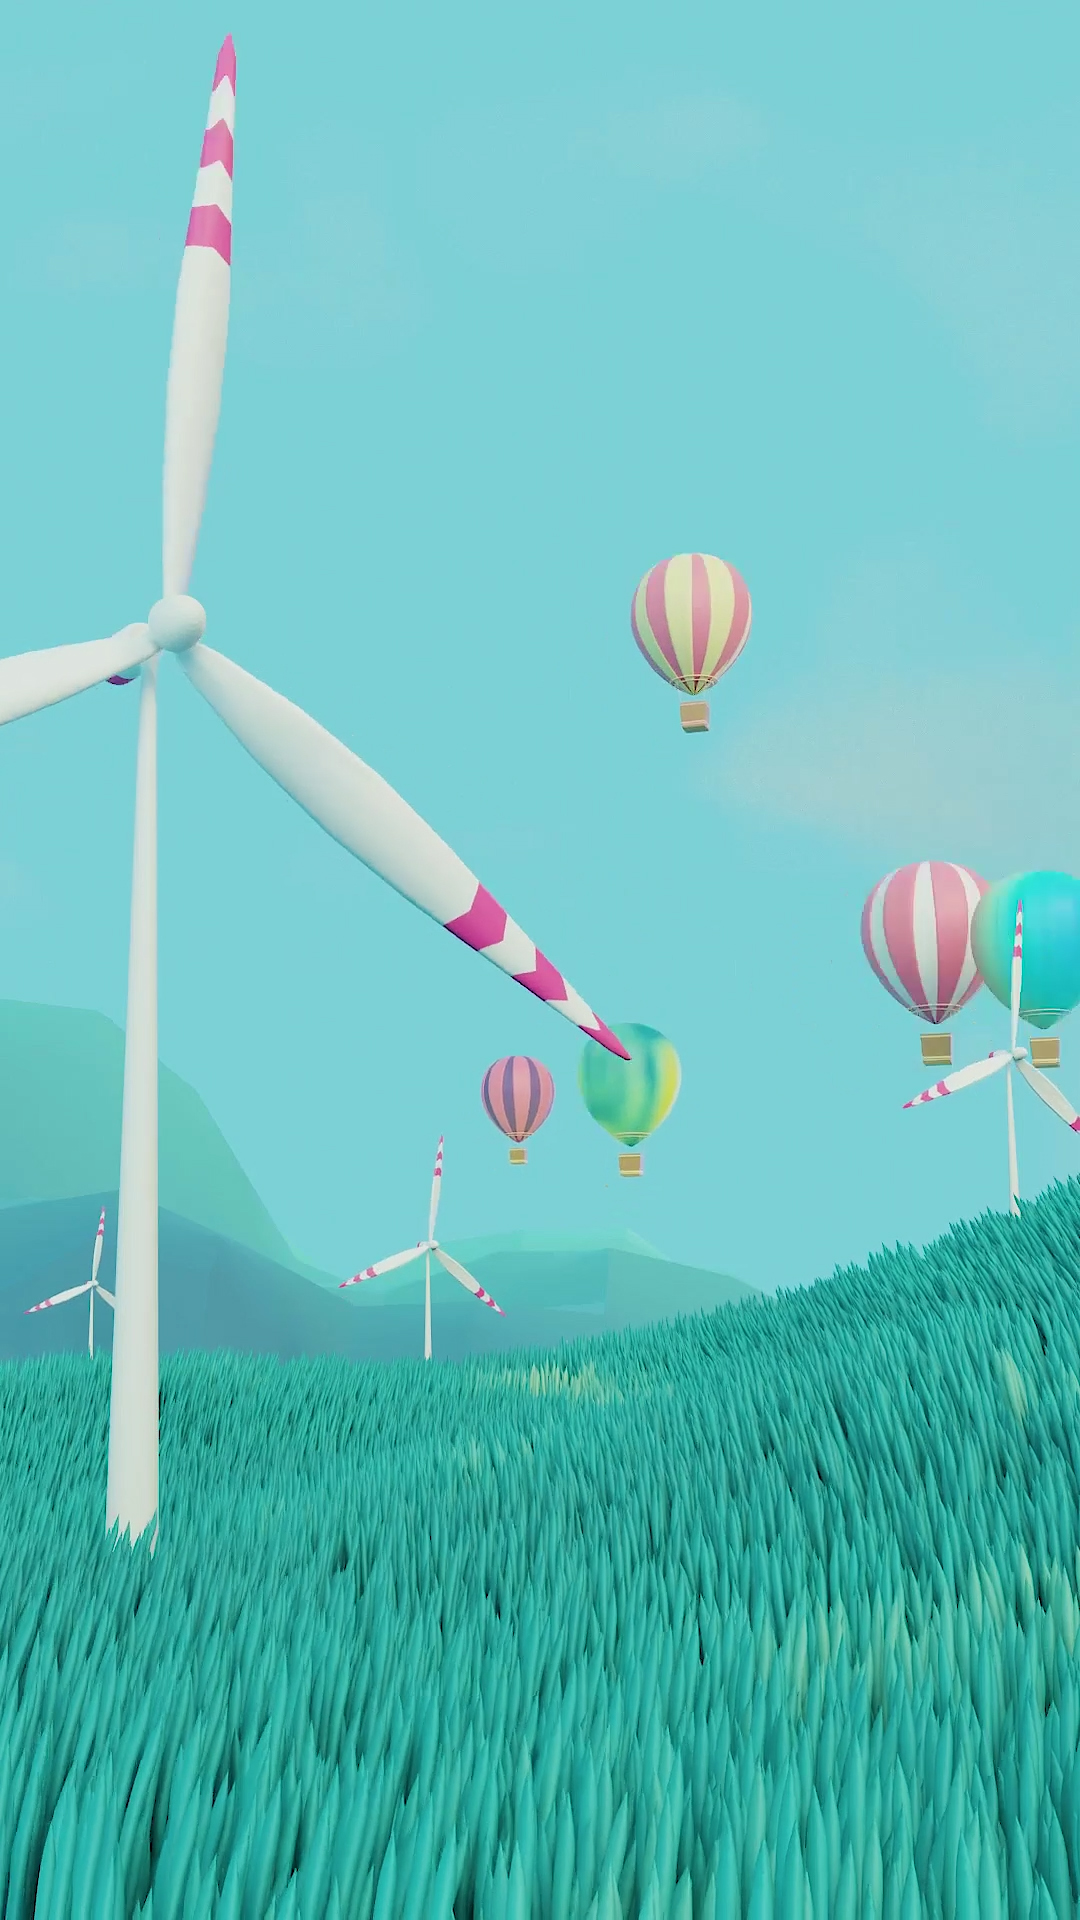 蓝天、白云、热气球、风车和绿草